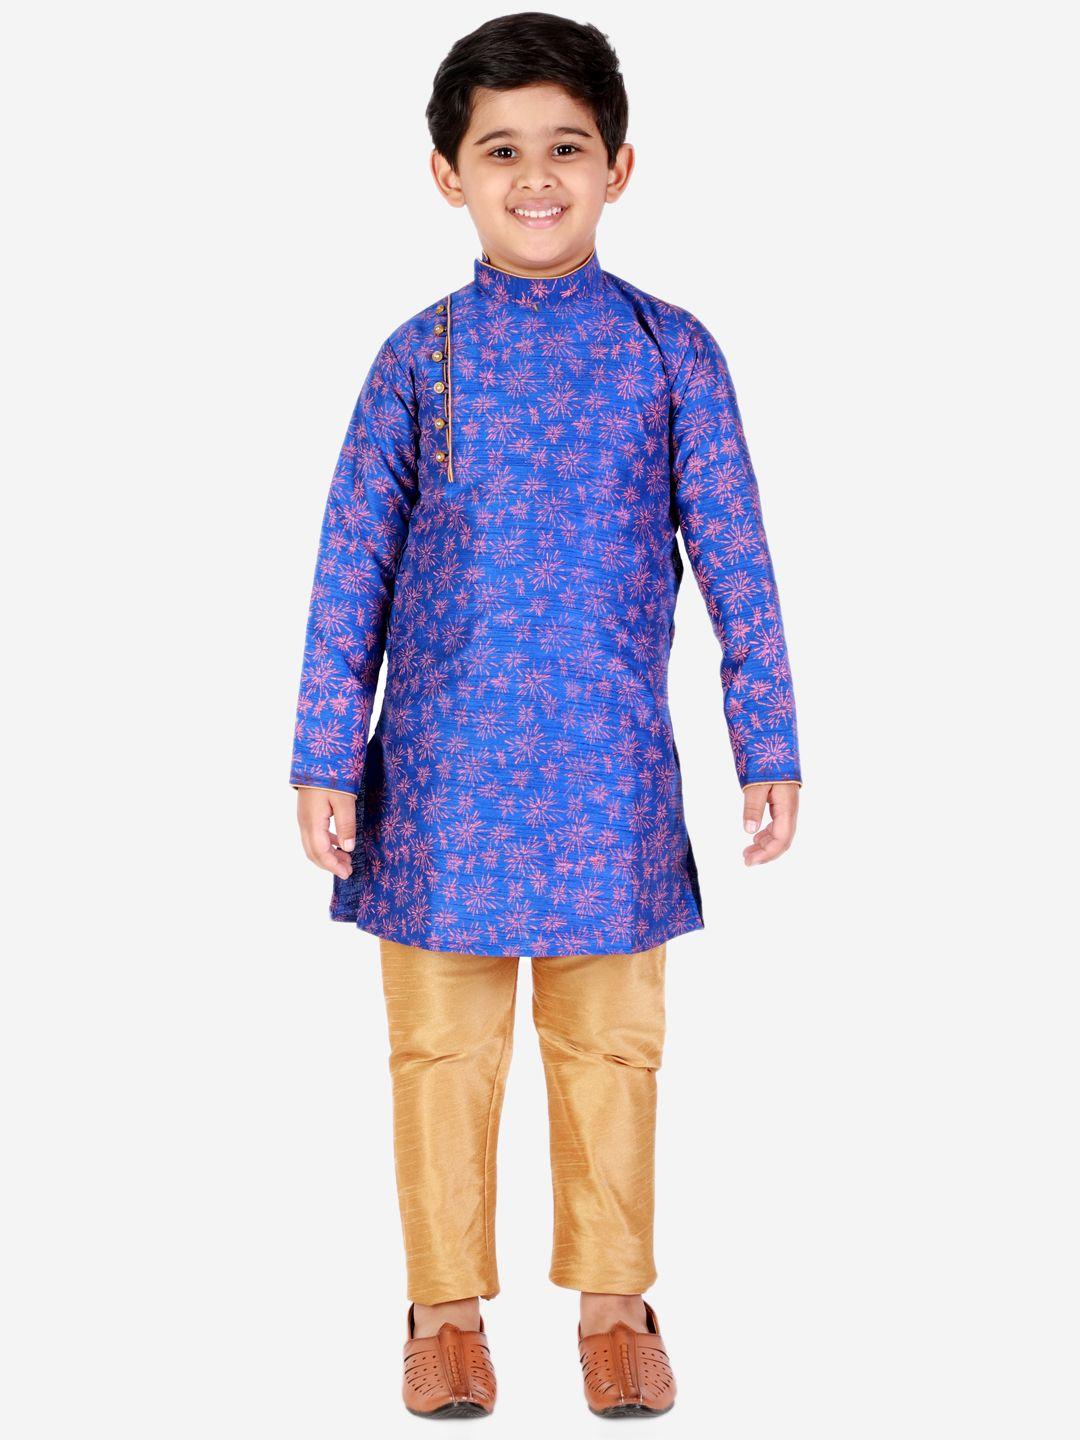 pro-ethic style developer boys blue ethnic motifs printed kurta with pyjamas